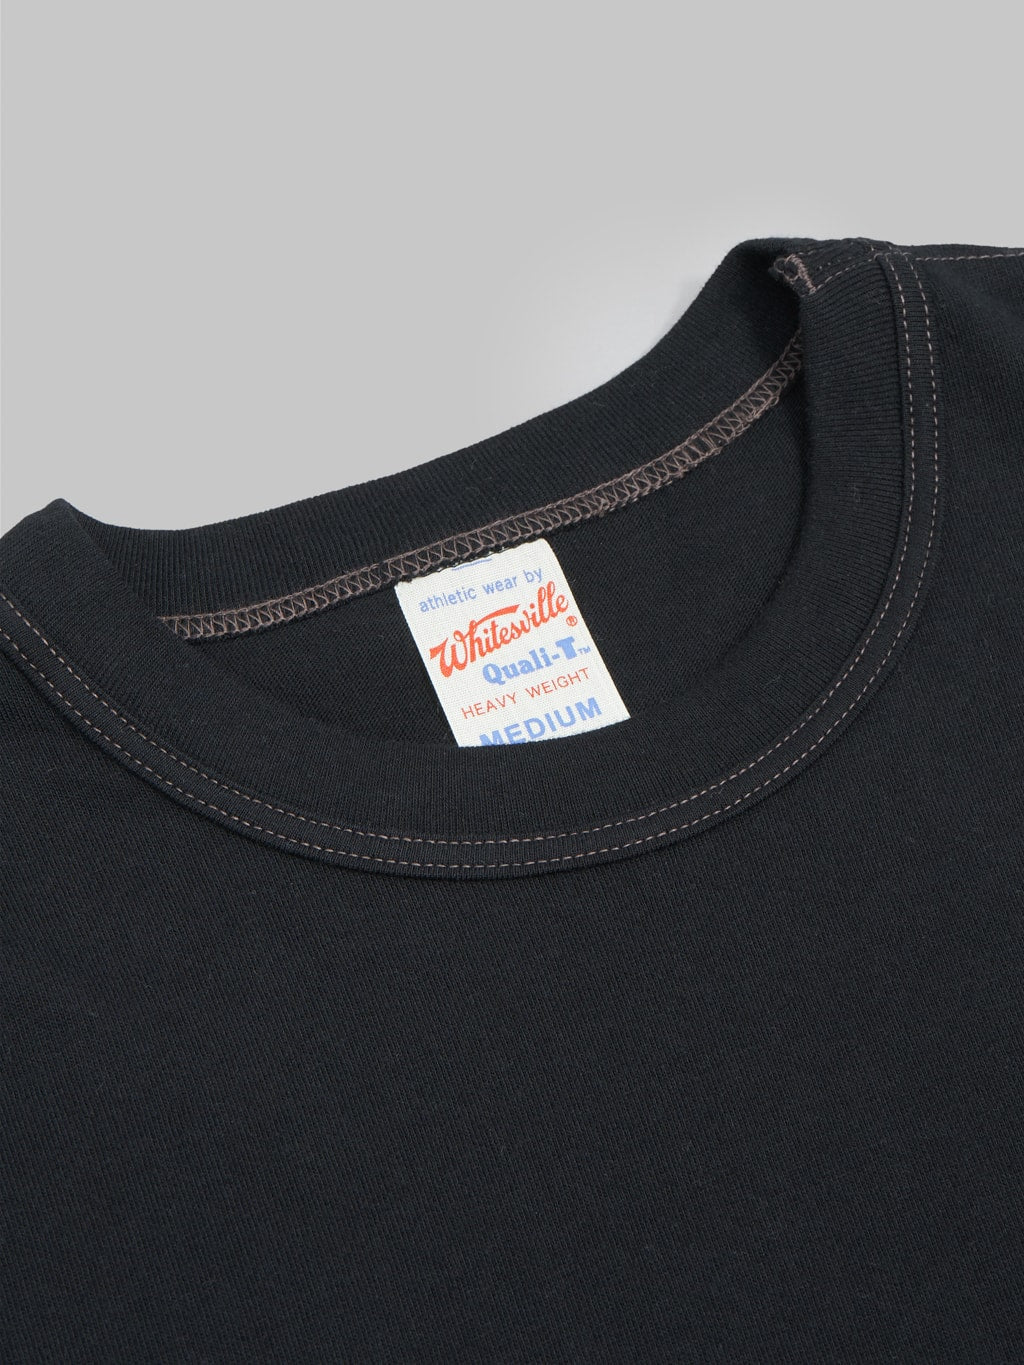 Whitesville Tubular T-Shirt Black (2 Pack)